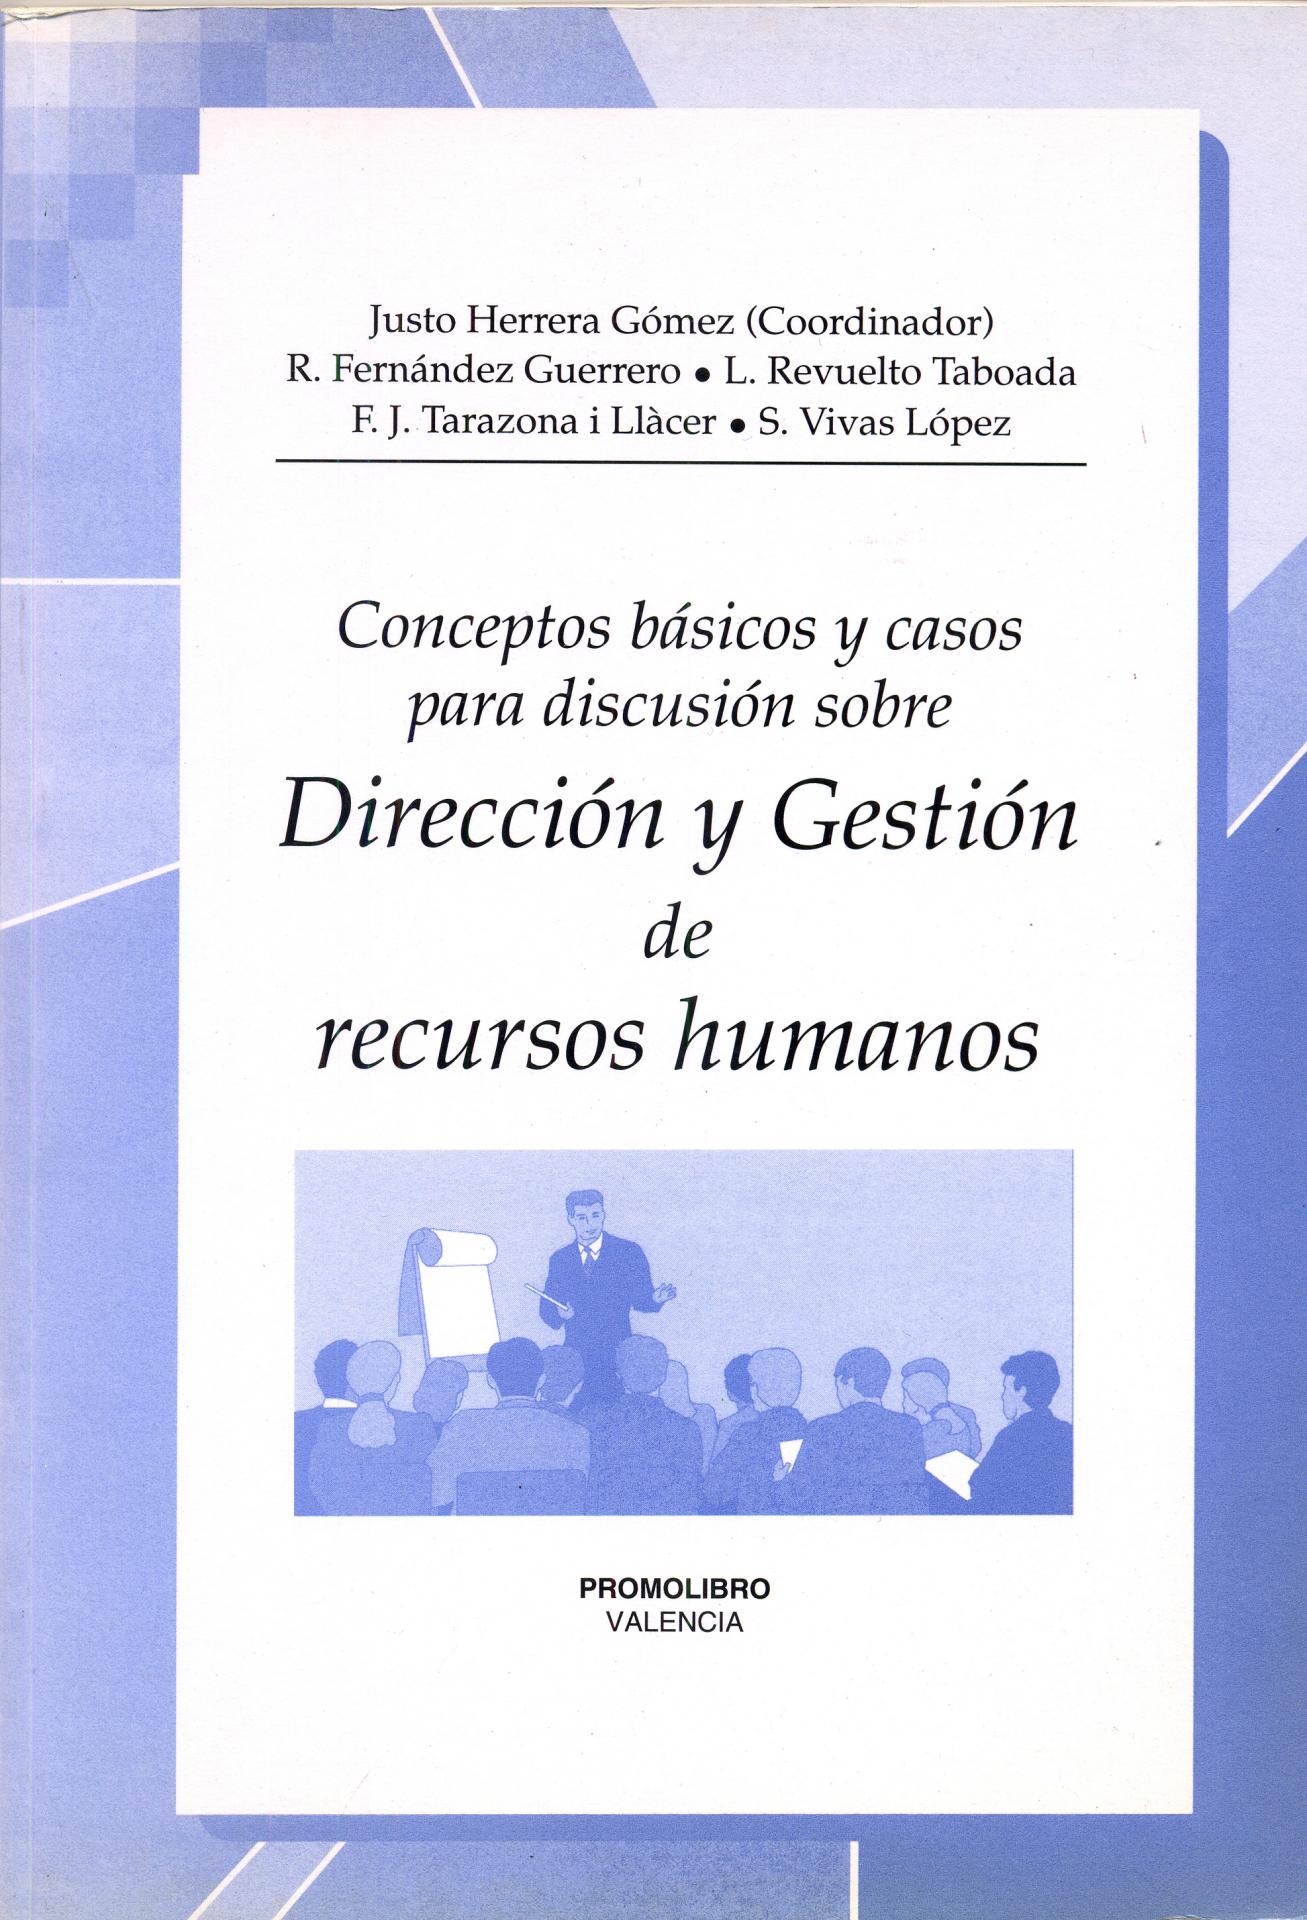 Conceptos básicos y casos para discusión sobre DIRECCIÓN Y GESTIÓN DE RECURSOS HUMANOS